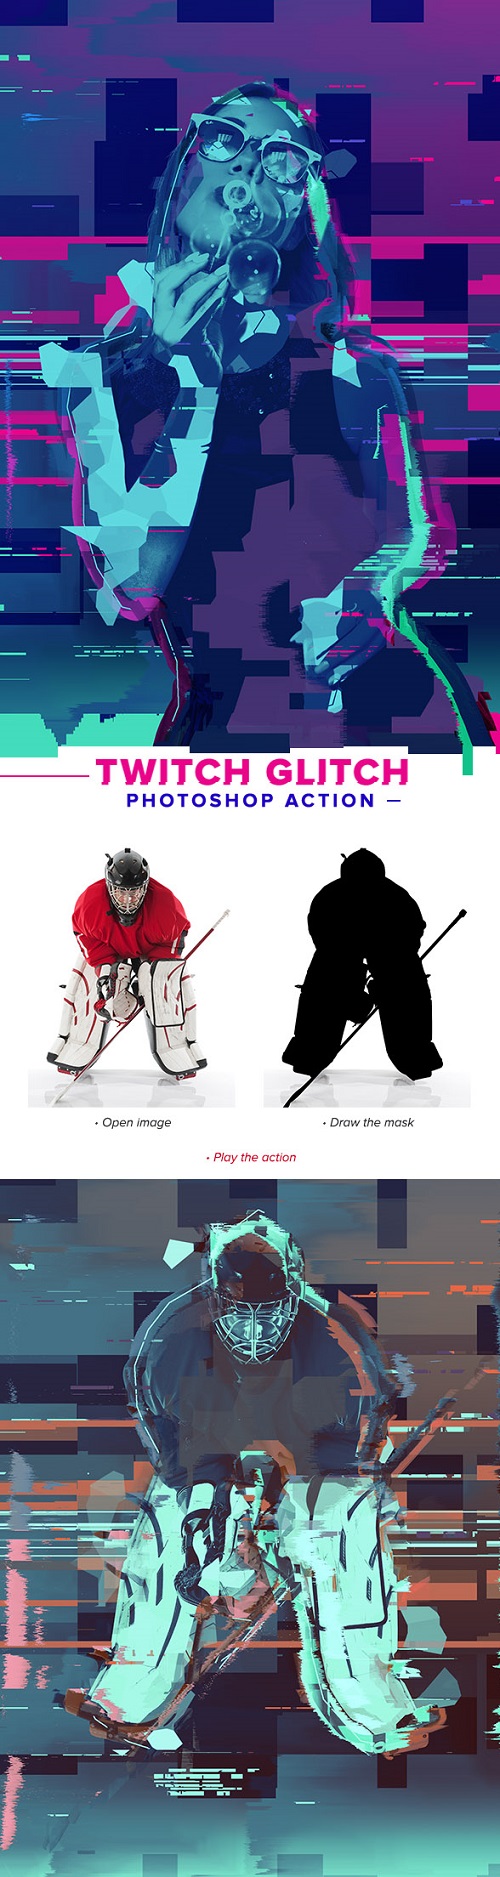 Twitch Glitch Photoshop Action 21247024